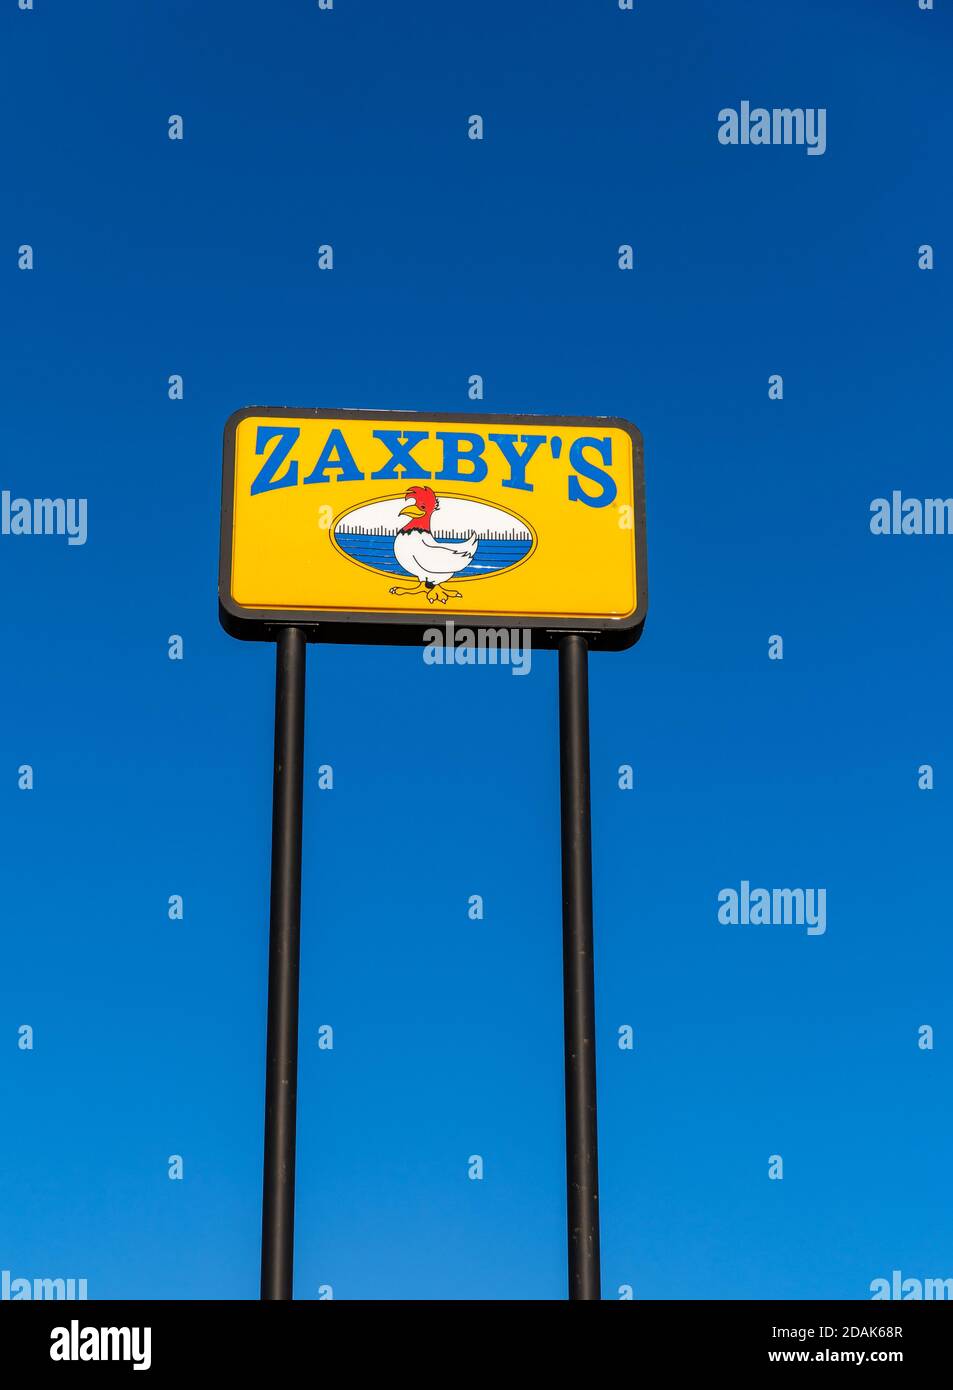 Atlanta, GA / USA - 29 ottobre 2020: Cartello del ristorante Zaxby's, una catena di fast food che serve pollo fritto e una varietà di altri prodotti alimentari. Foto Stock